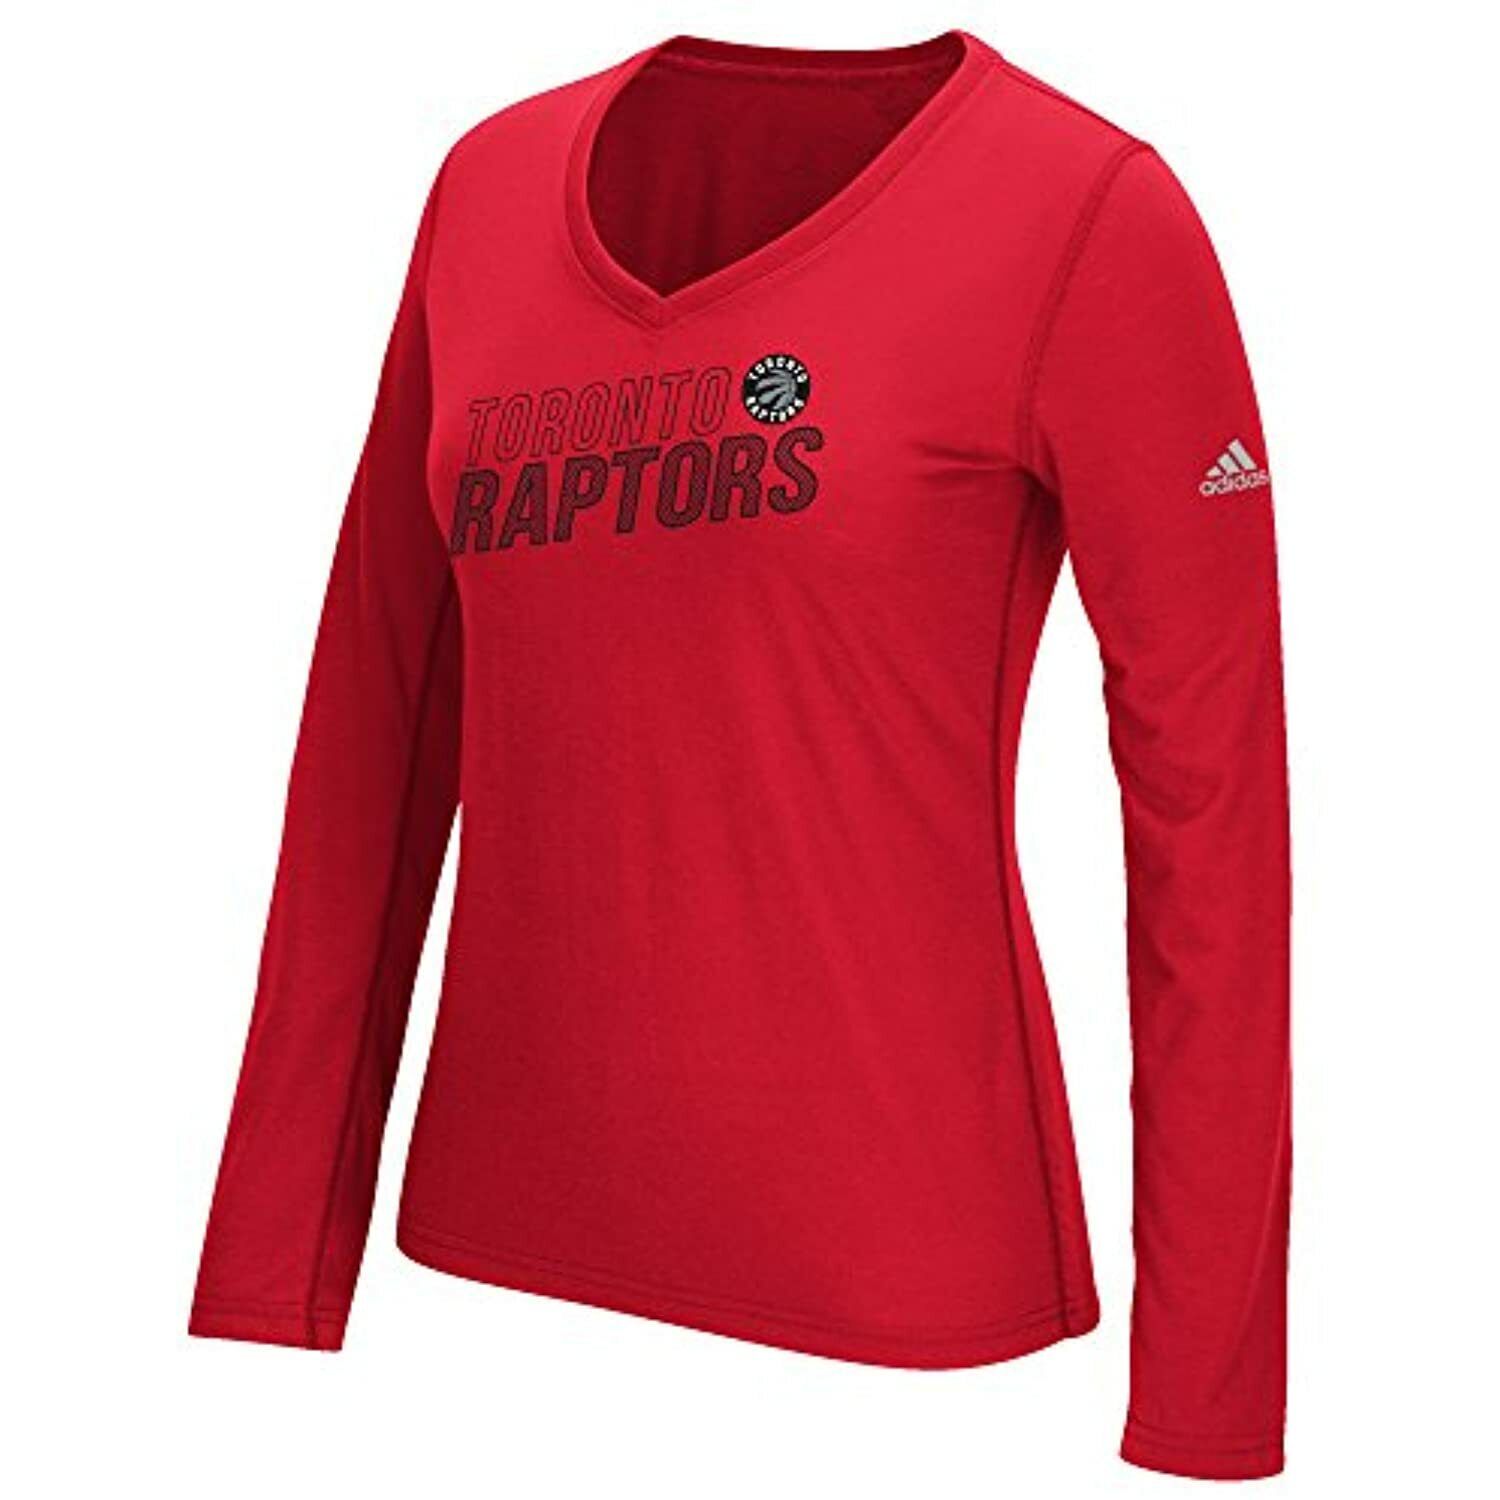 Nba Womens Apparel / Toronto Raptors Ladies ADIDAS Nba LS Team Tee Shirt,  NWT